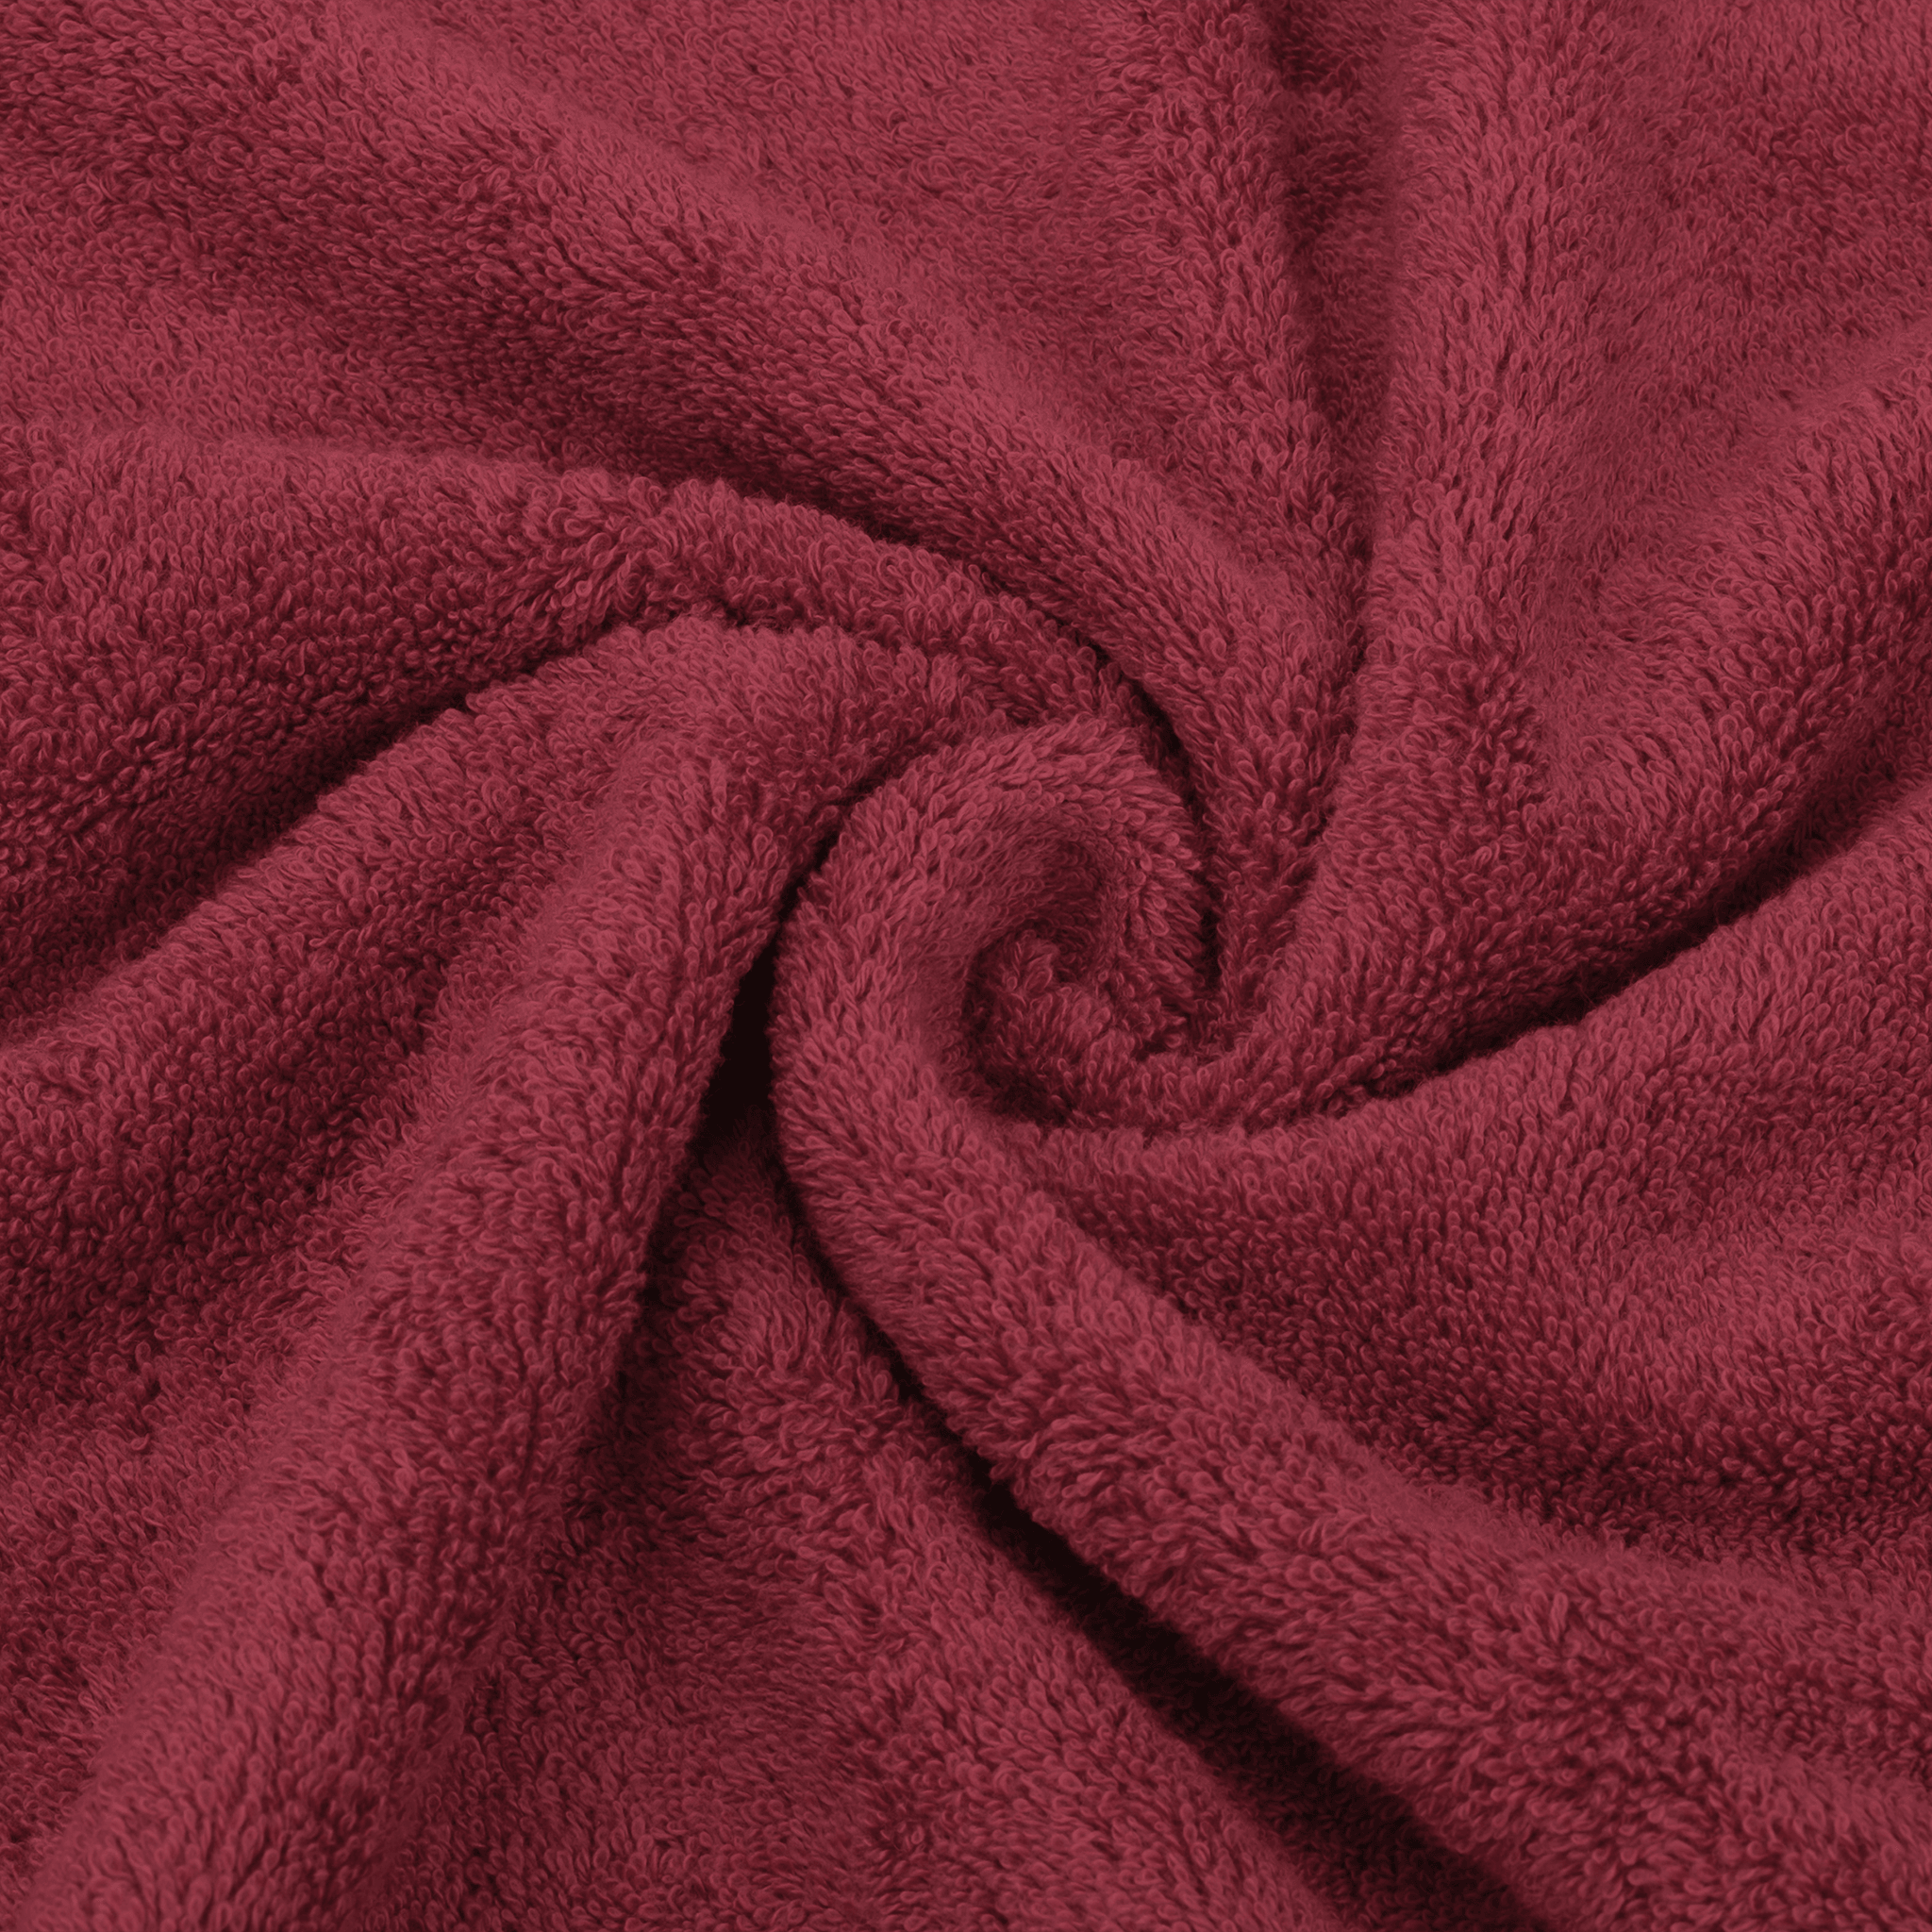 American Soft Linen - 3 Piece Turkish Cotton Towel Set - Bordeaux-Red - 7